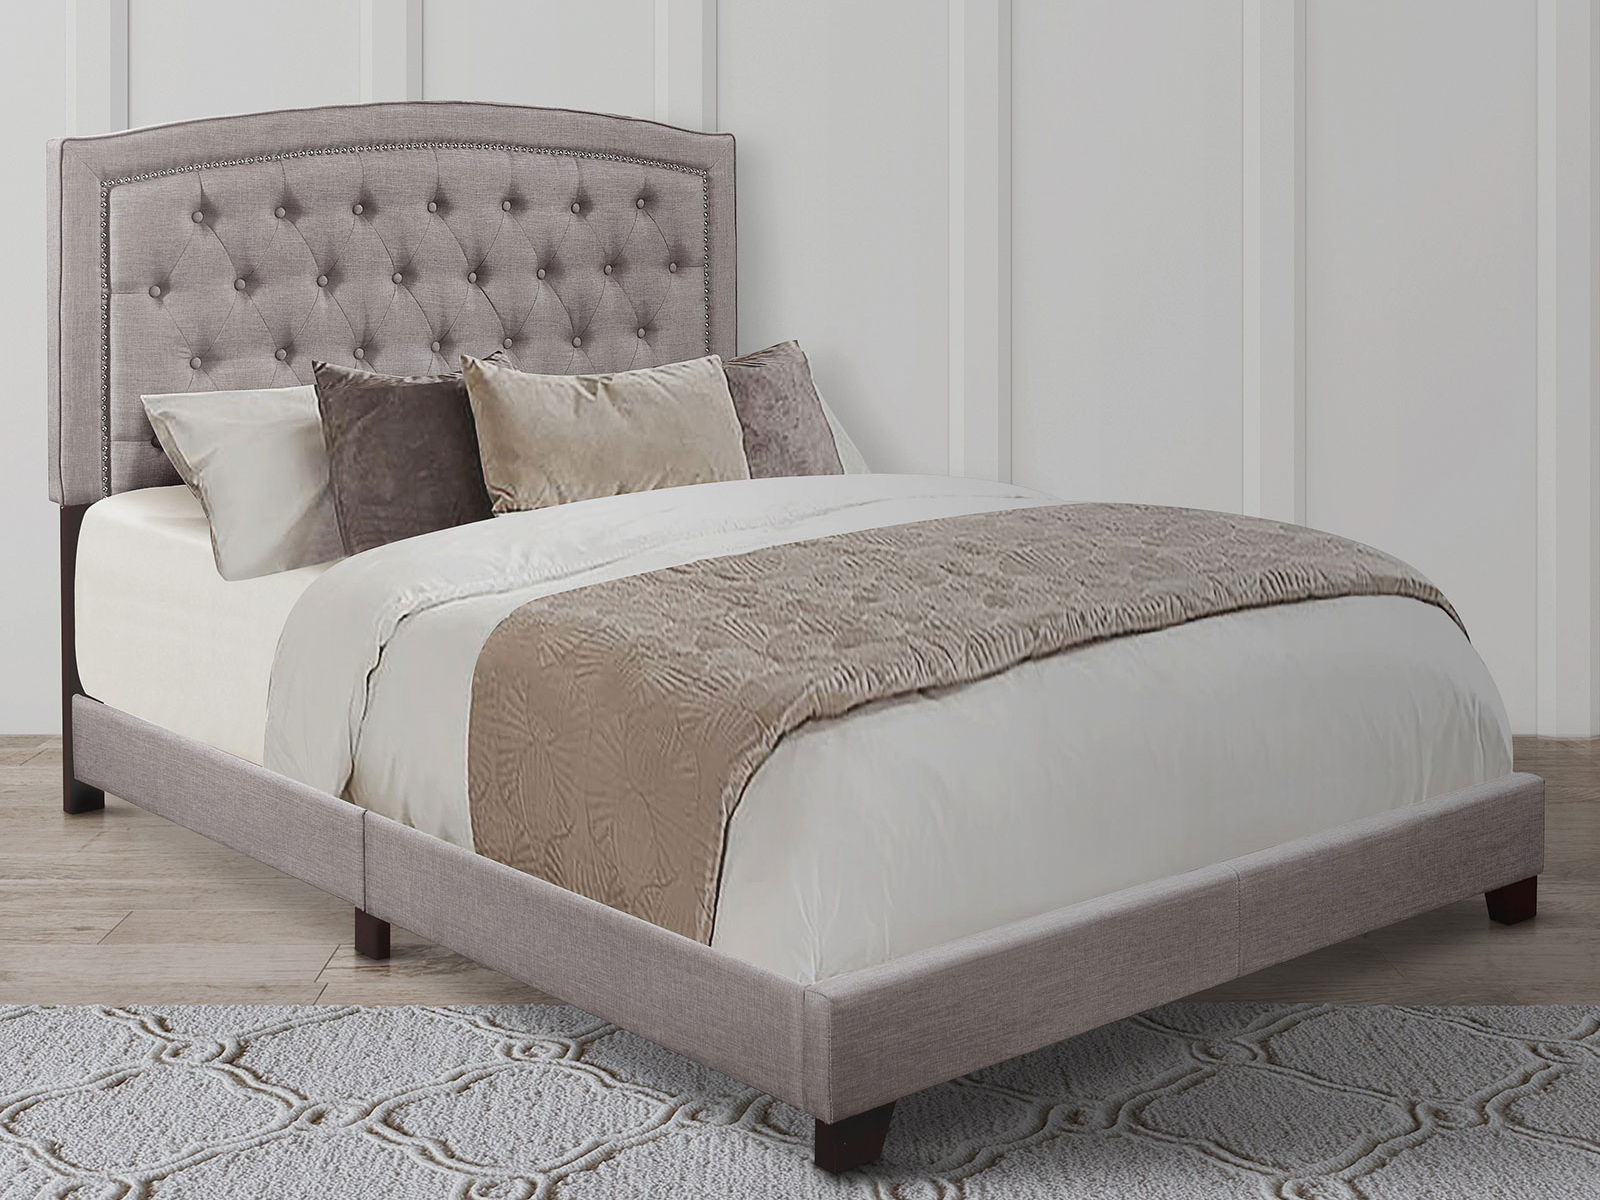 Homelegance Upholstered Bed Set | King | Linden Bed Frame & Headboard | Gray